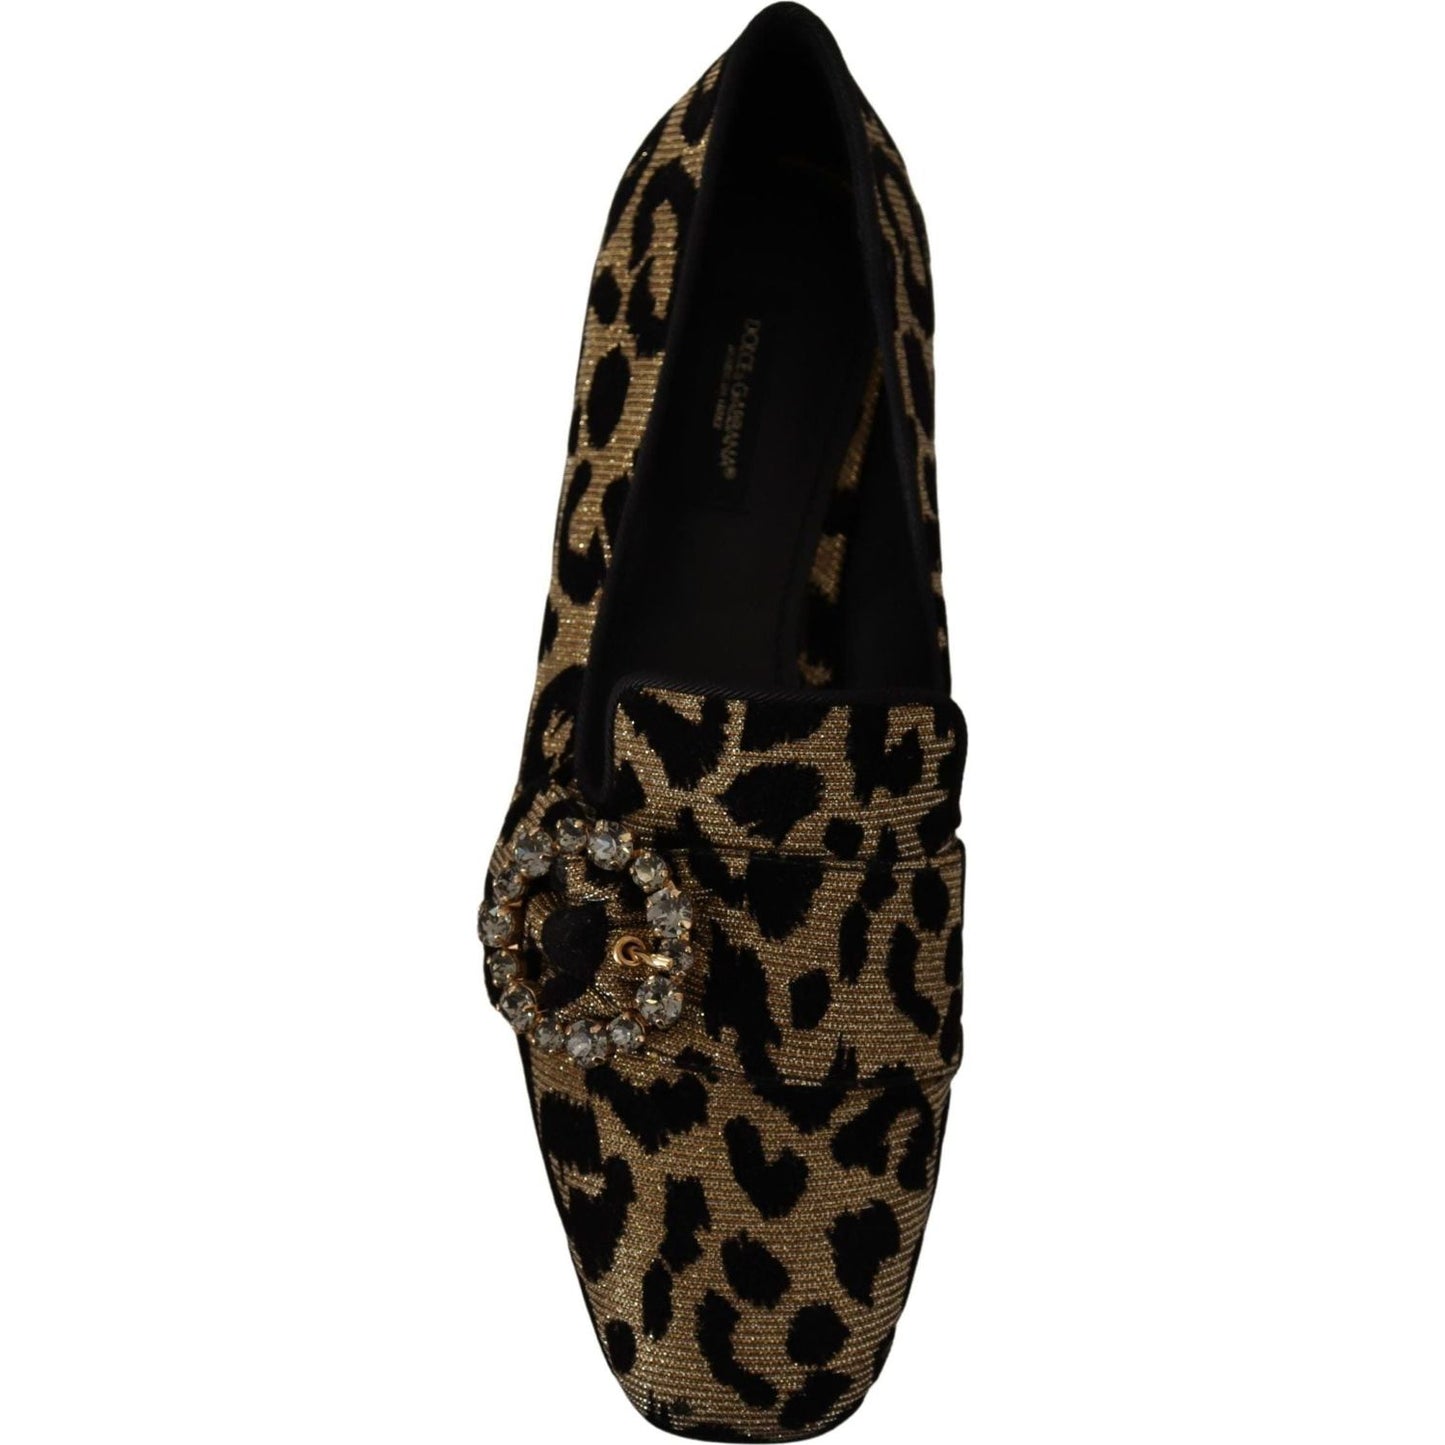 Dolce & Gabbana Elegant Leopard Crystal Gem Loafers gold-leopard-print-crystals-loafers-shoes IMG_0235-scaled-0e546b66-ac4.jpg